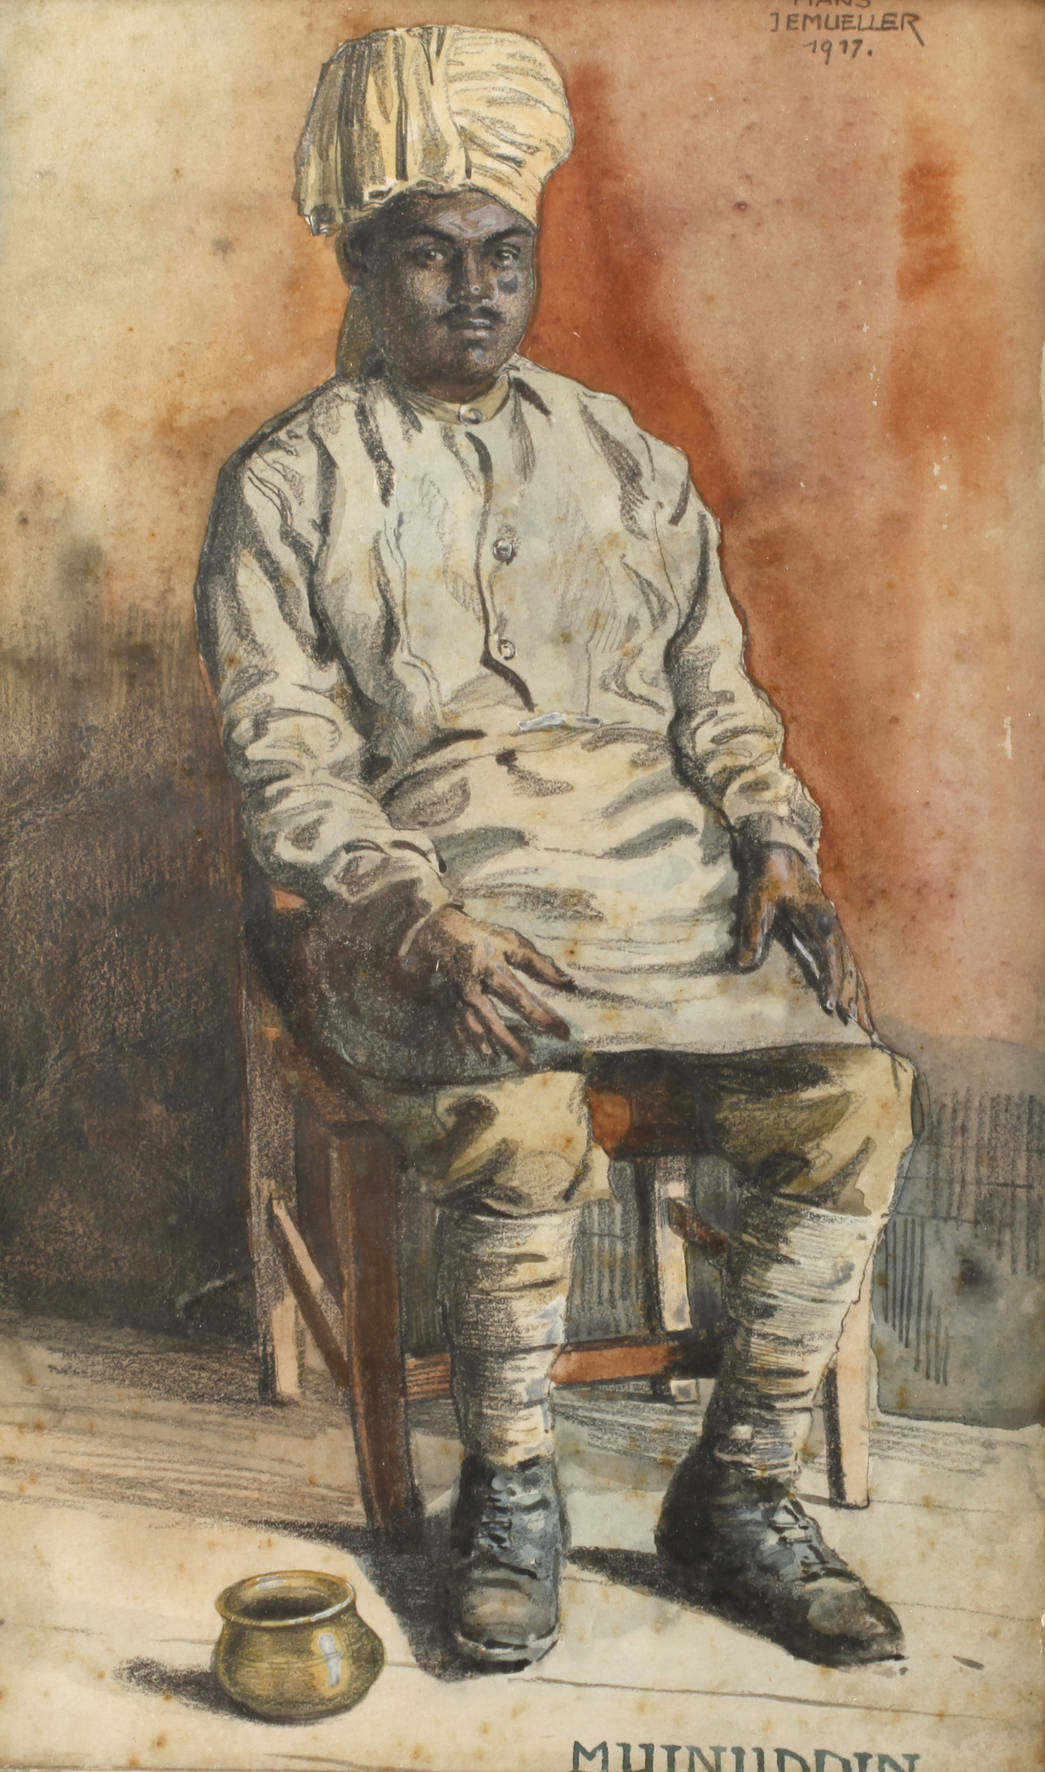 Hans Jemüller, Orientalenportrait